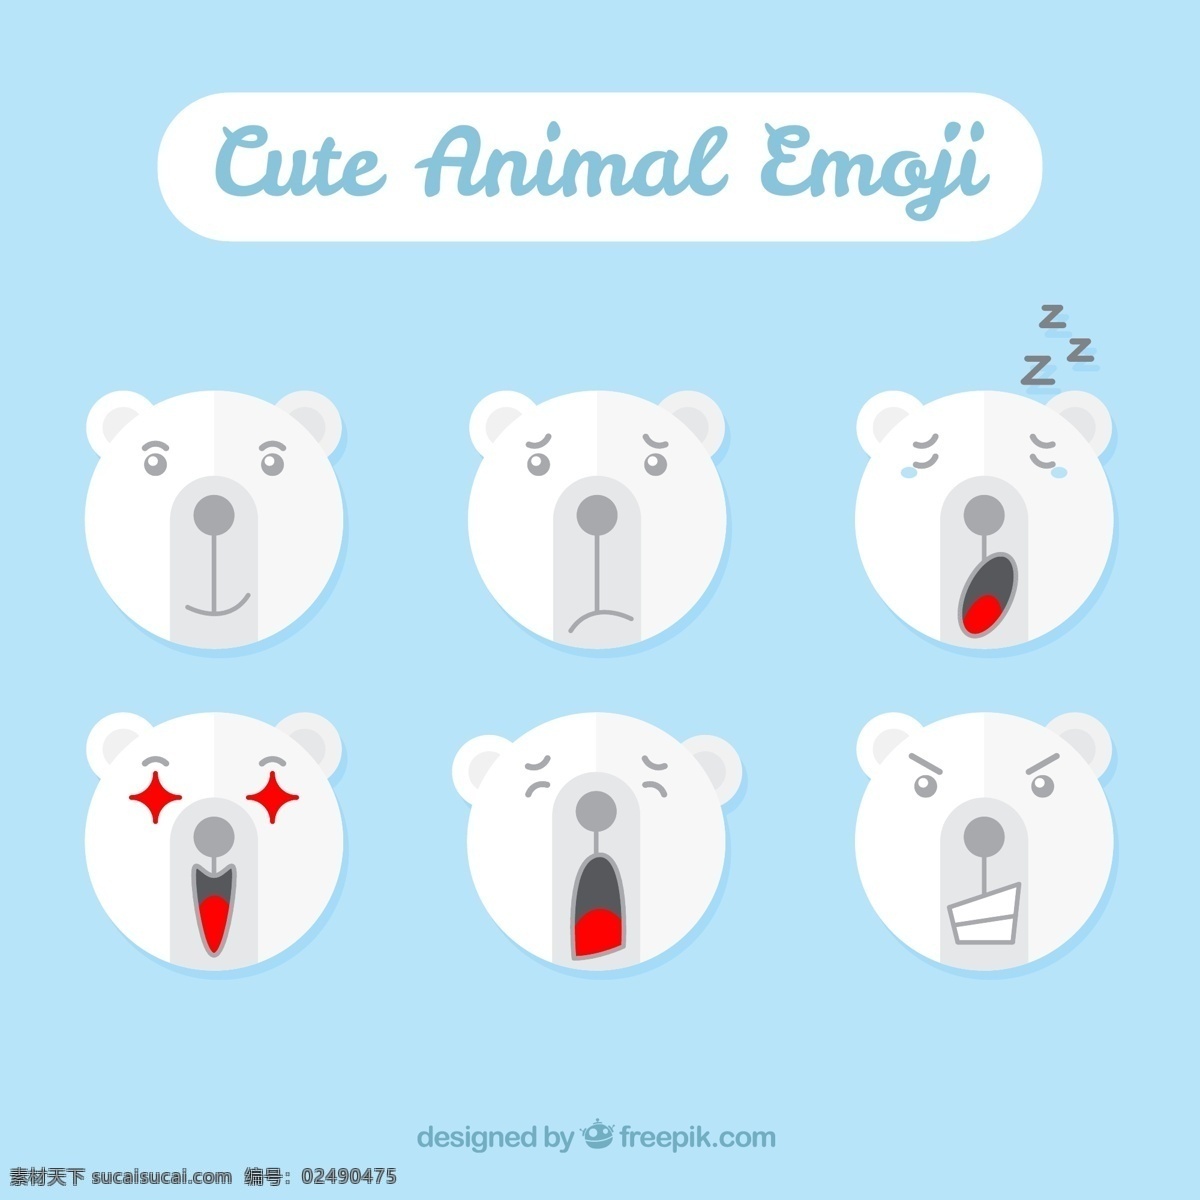 大 白熊 憨厚 表情 包 元素 设计素材 创意设计 动物 小动物 卡通 可爱 矢量素材 大白熊